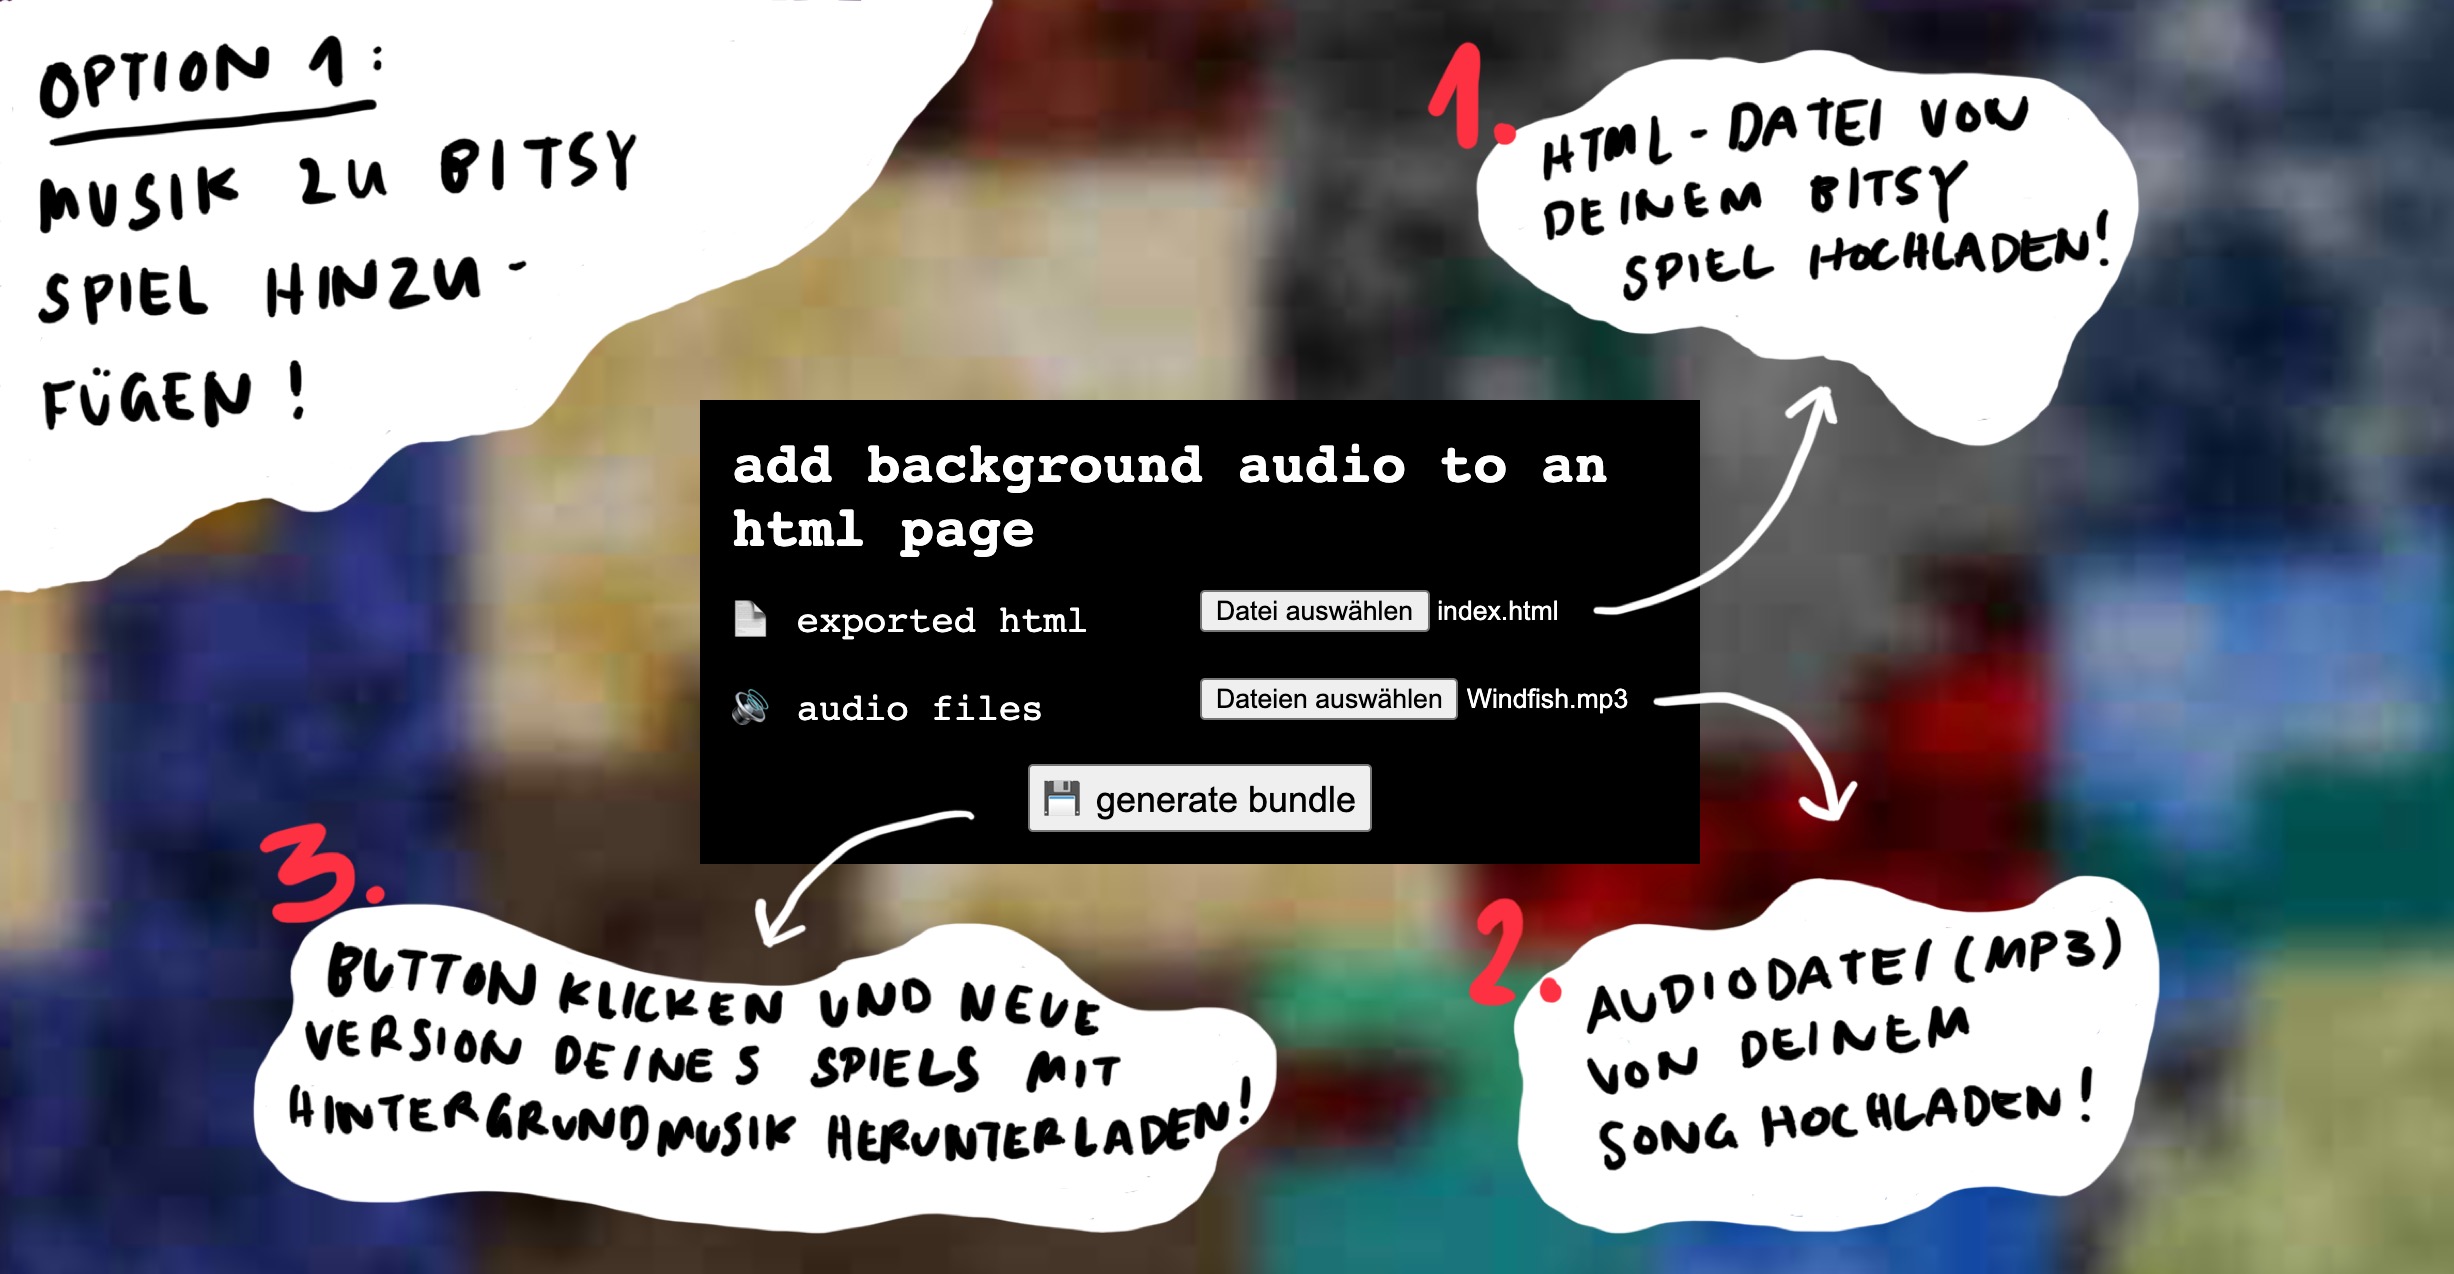 Screenshot der Webseite des Tools, um Audio zu einem Bitsy-Spiel hinzuzufügen.